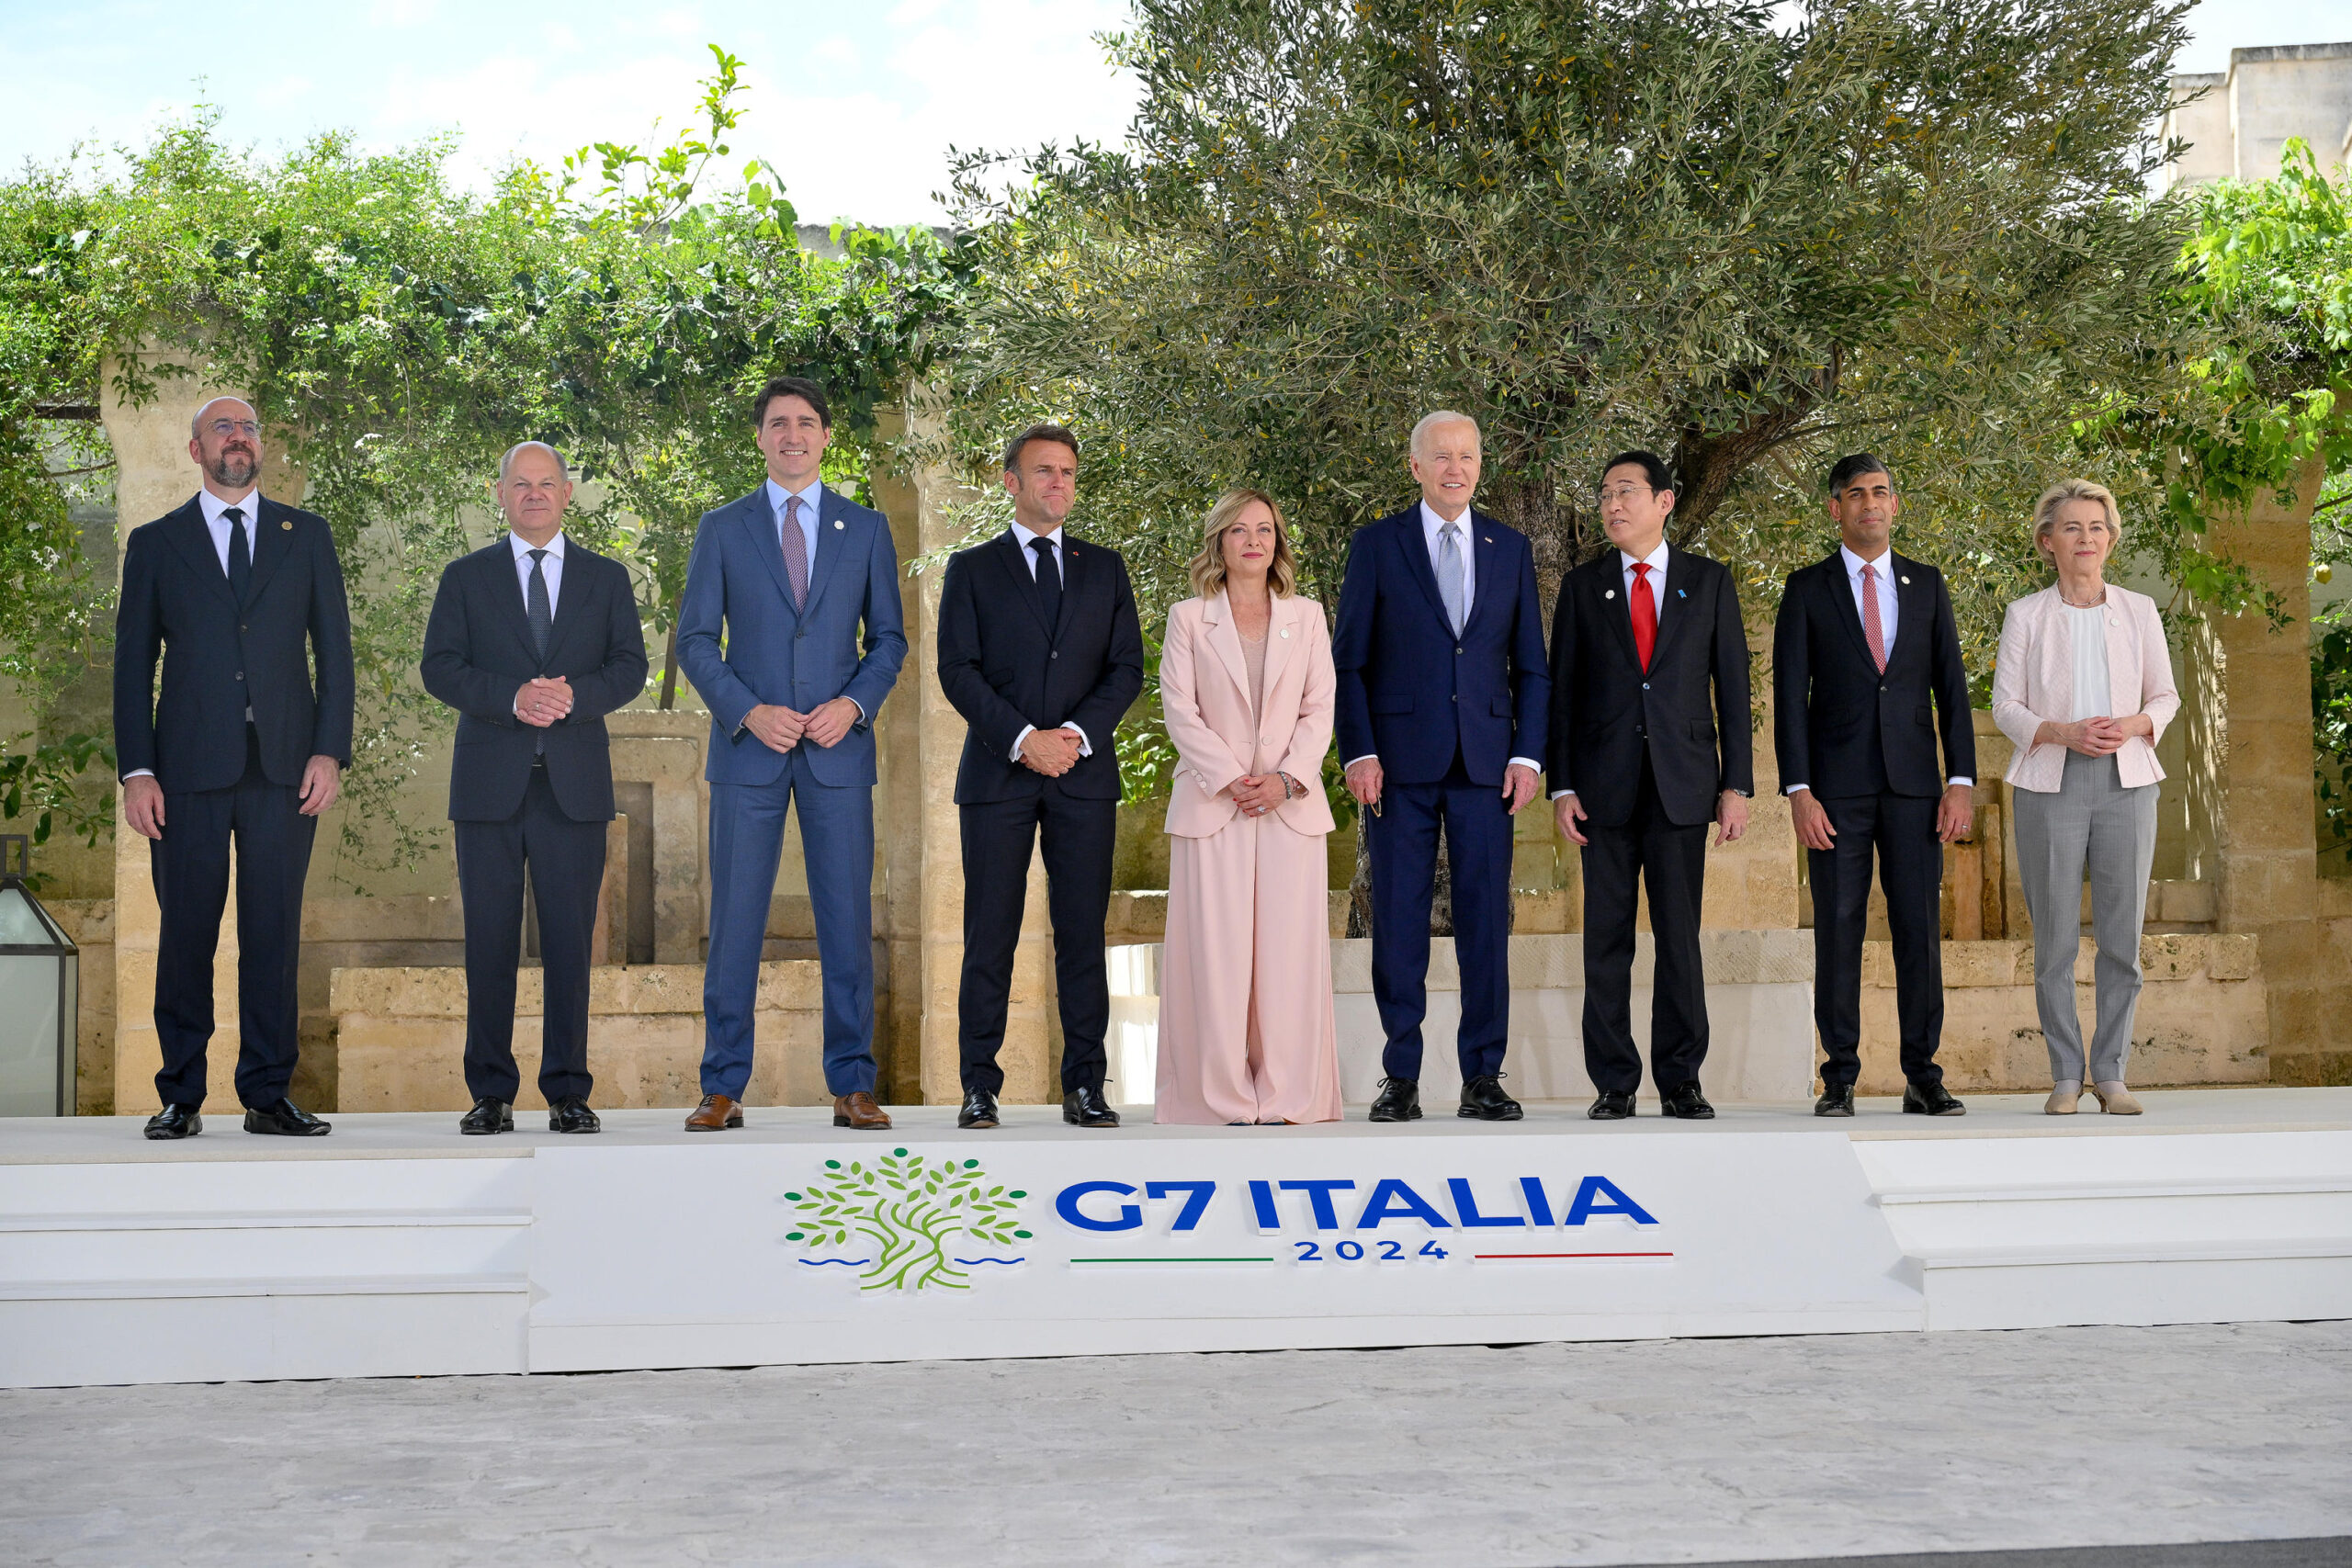 G7 Italia, Meloni: “Summit non è fortezza chiusa. Siamo aperti al mondo”